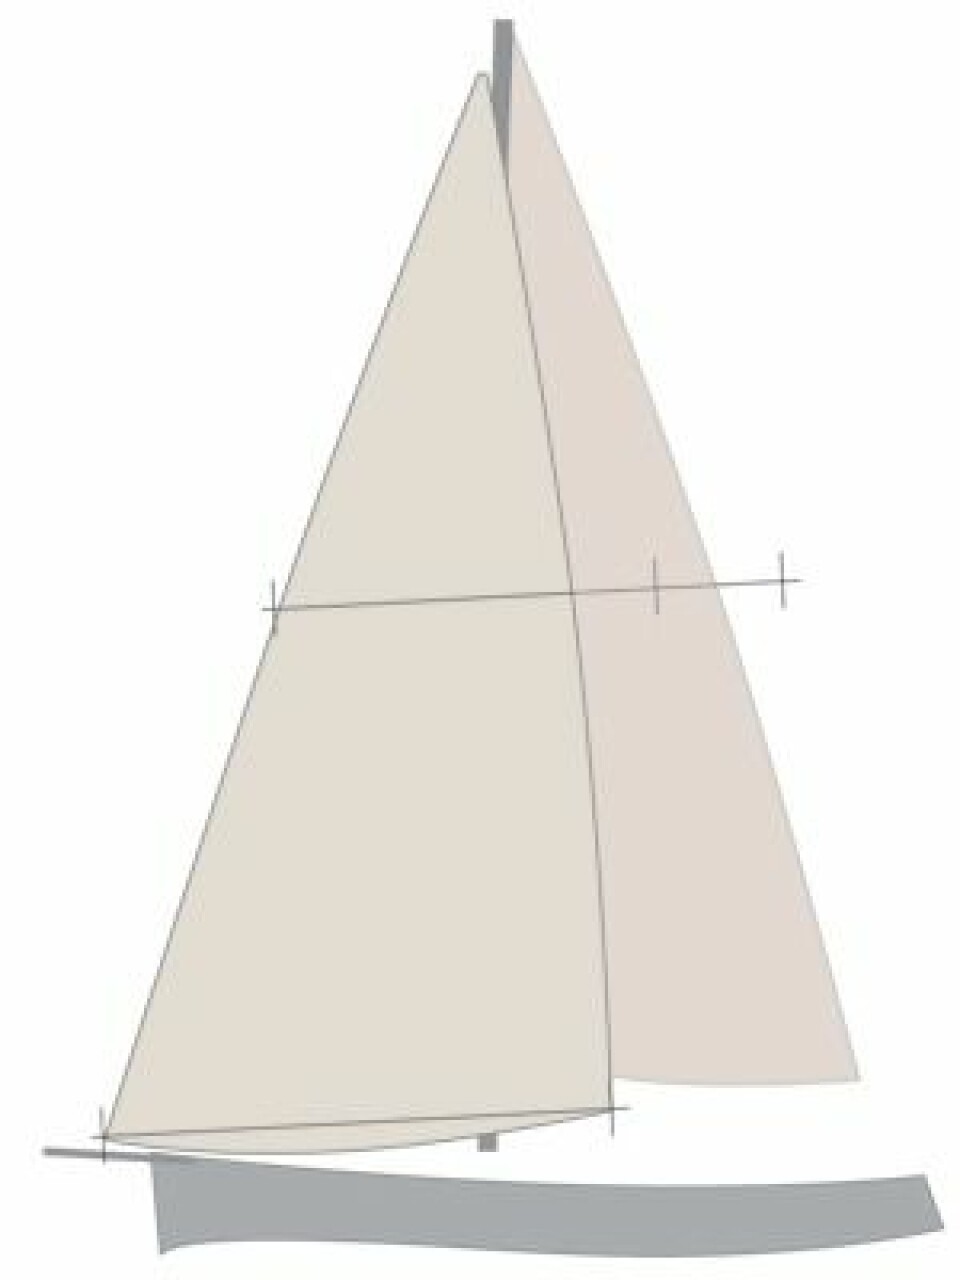 FORSEIL: Et flatt og strekkfast code-seil er derfinert som forseil om det har en trekantet form. Seilet gir kraft og akselerasjon på kryss i lett vind, men et høyere måletall.